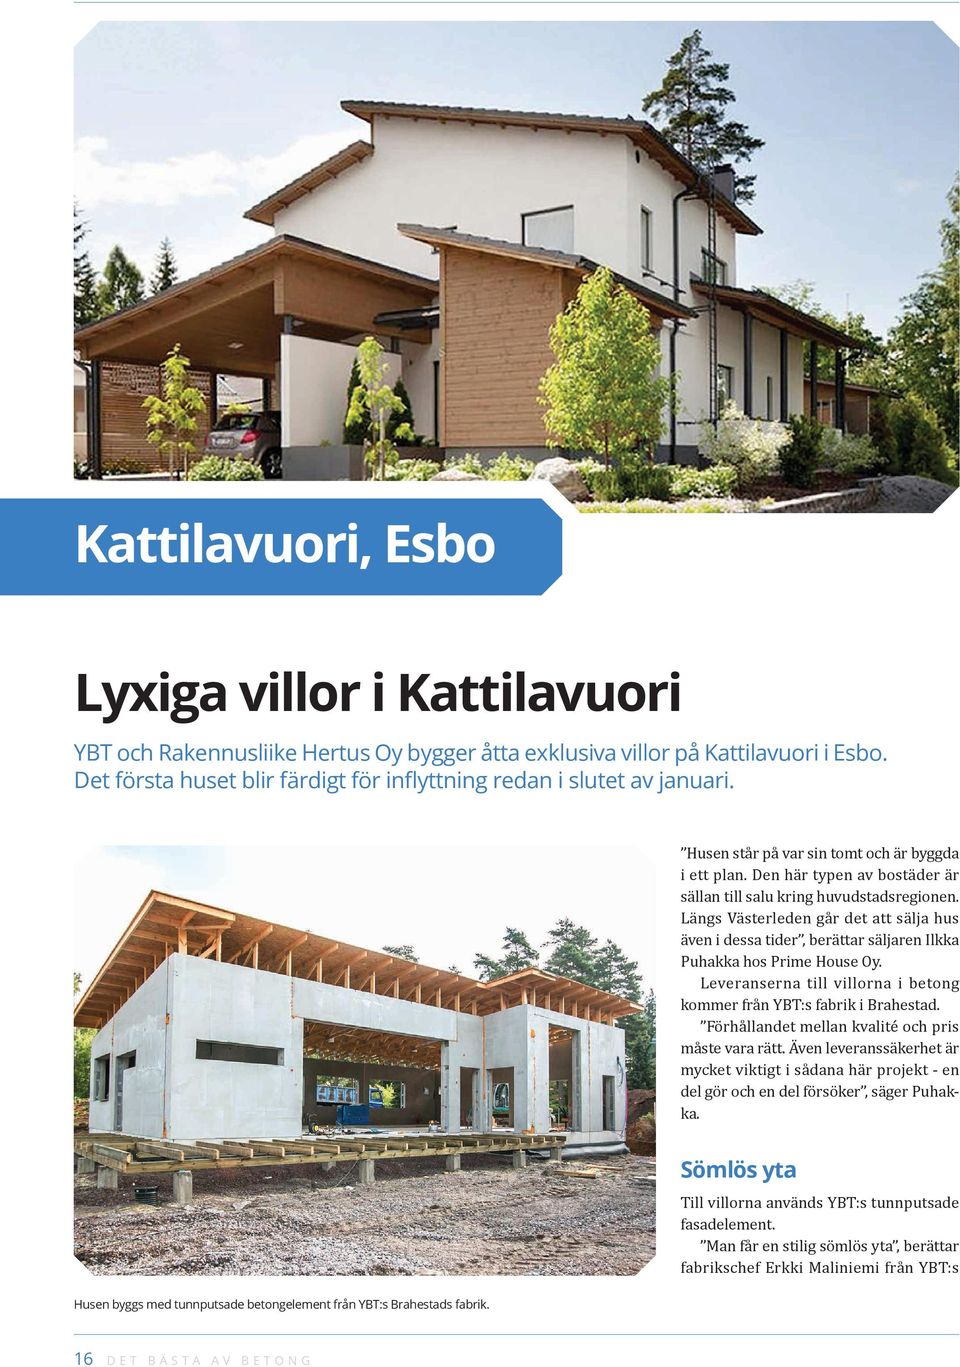 Längs Västerleden går det att sälja hus även i dessa tider, berättar säljaren Ilkka Puhakka hos Prime House Oy. Leveranserna till villorna i betong kommer från YBT:s fabrik i Brahestad.